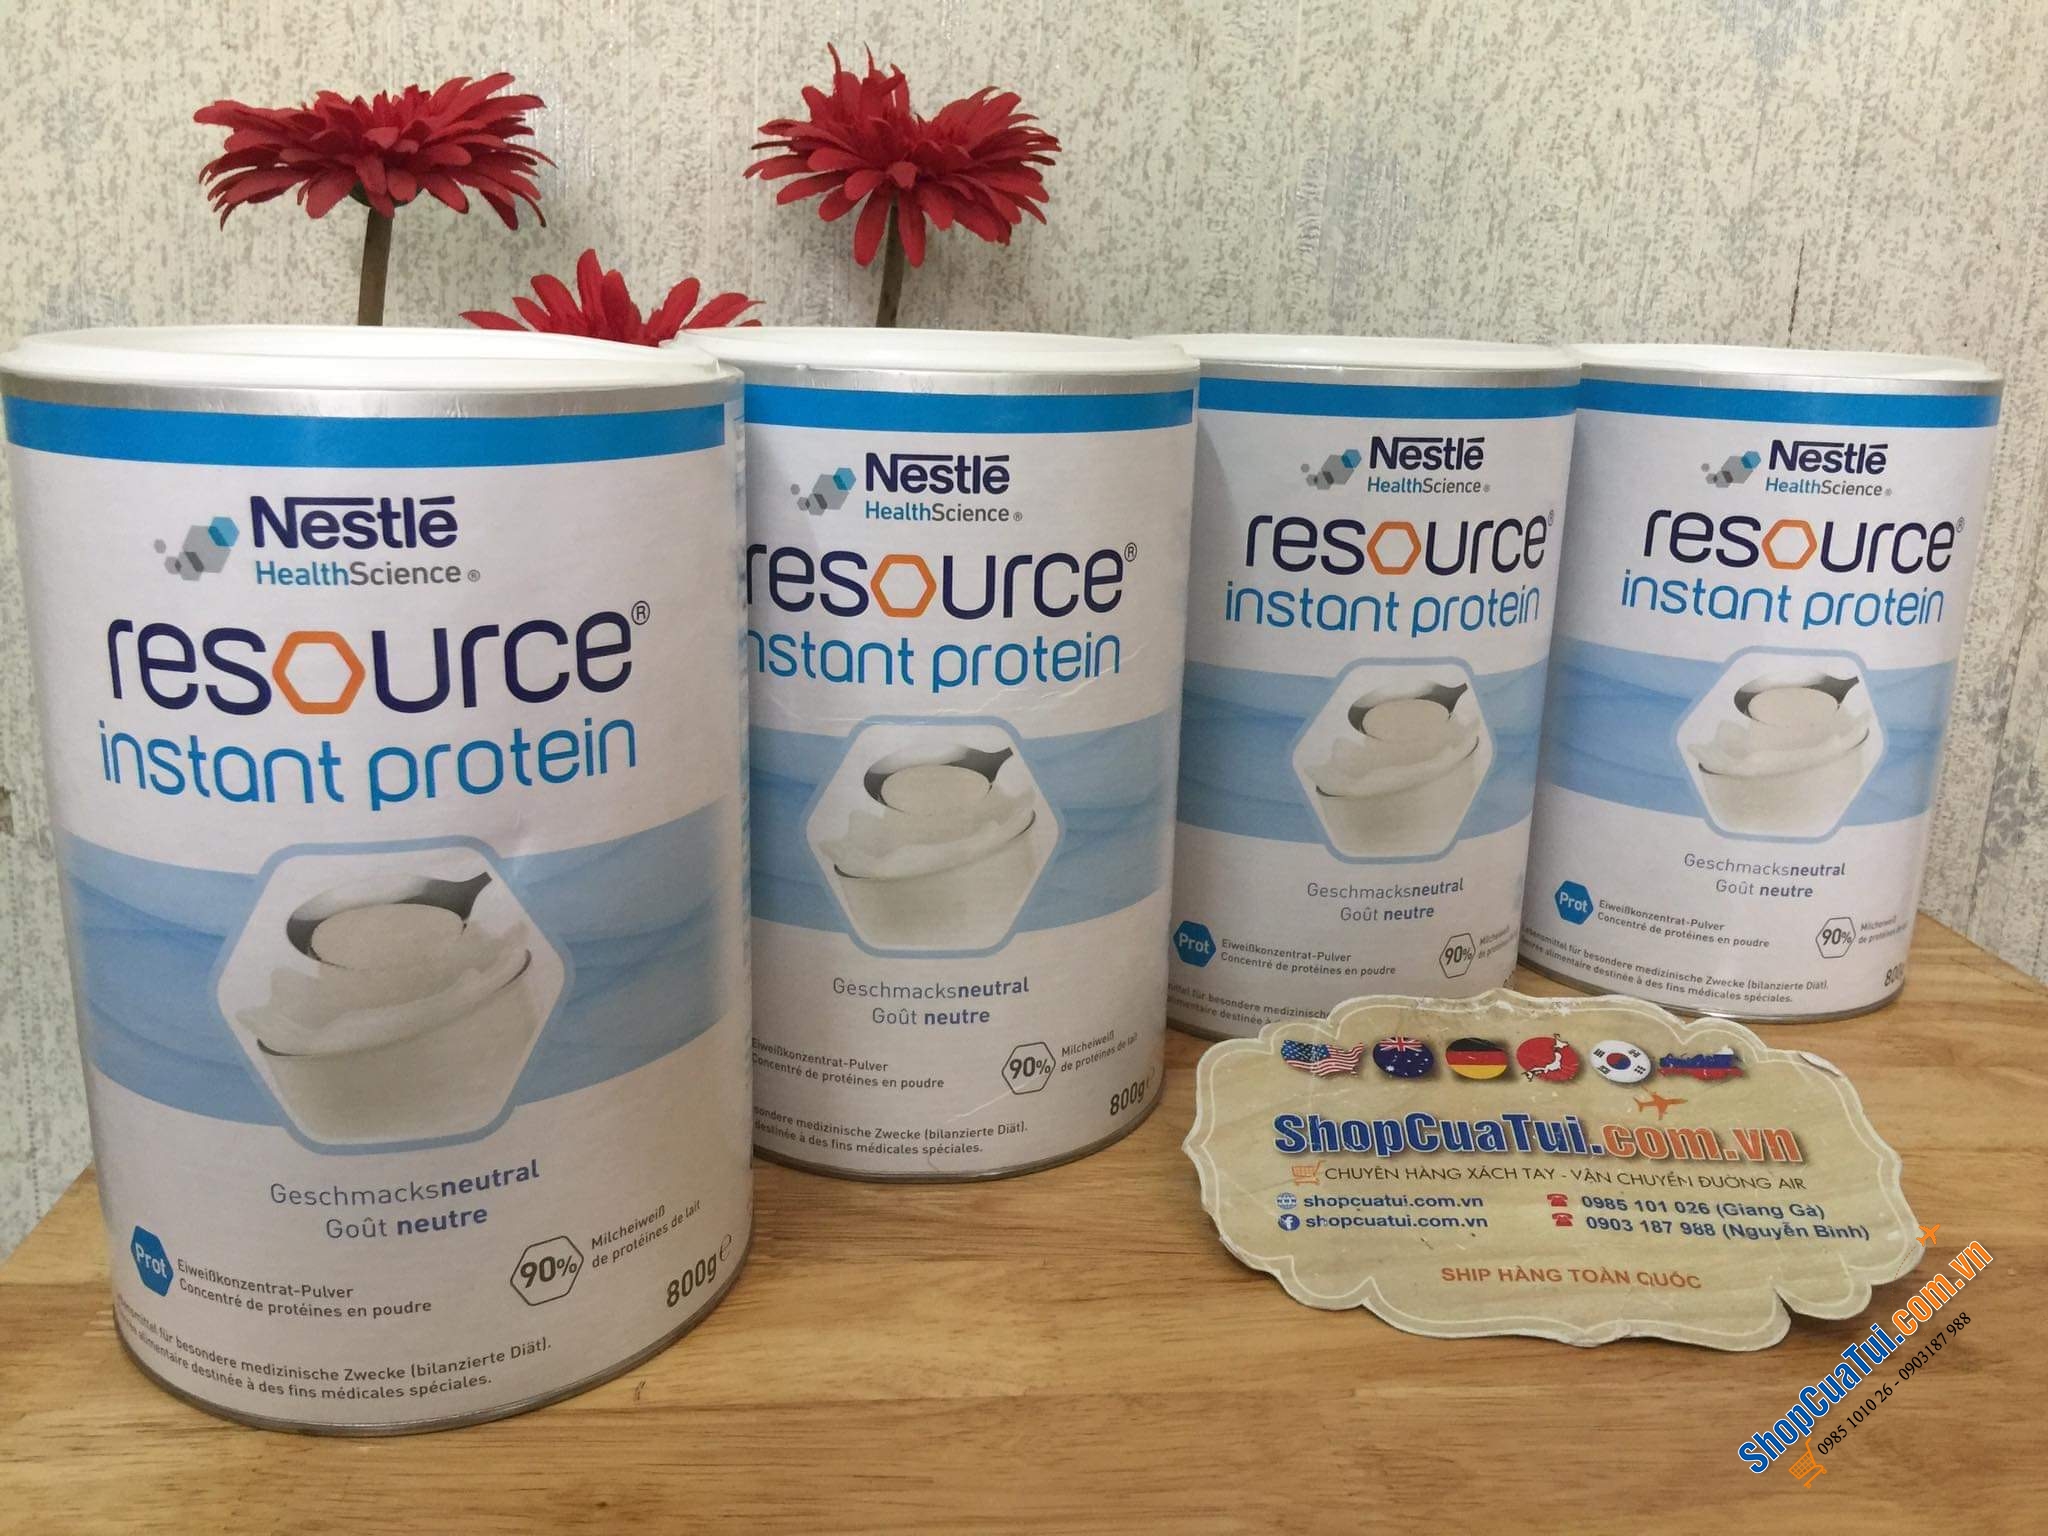 Sữa tiểu đường RESOURCE Instant Protein của hãng Nestle giúp bổ xung dinh dưỡng và tăng cường sức khoẻ cho bệnh nhân tiểu đường.